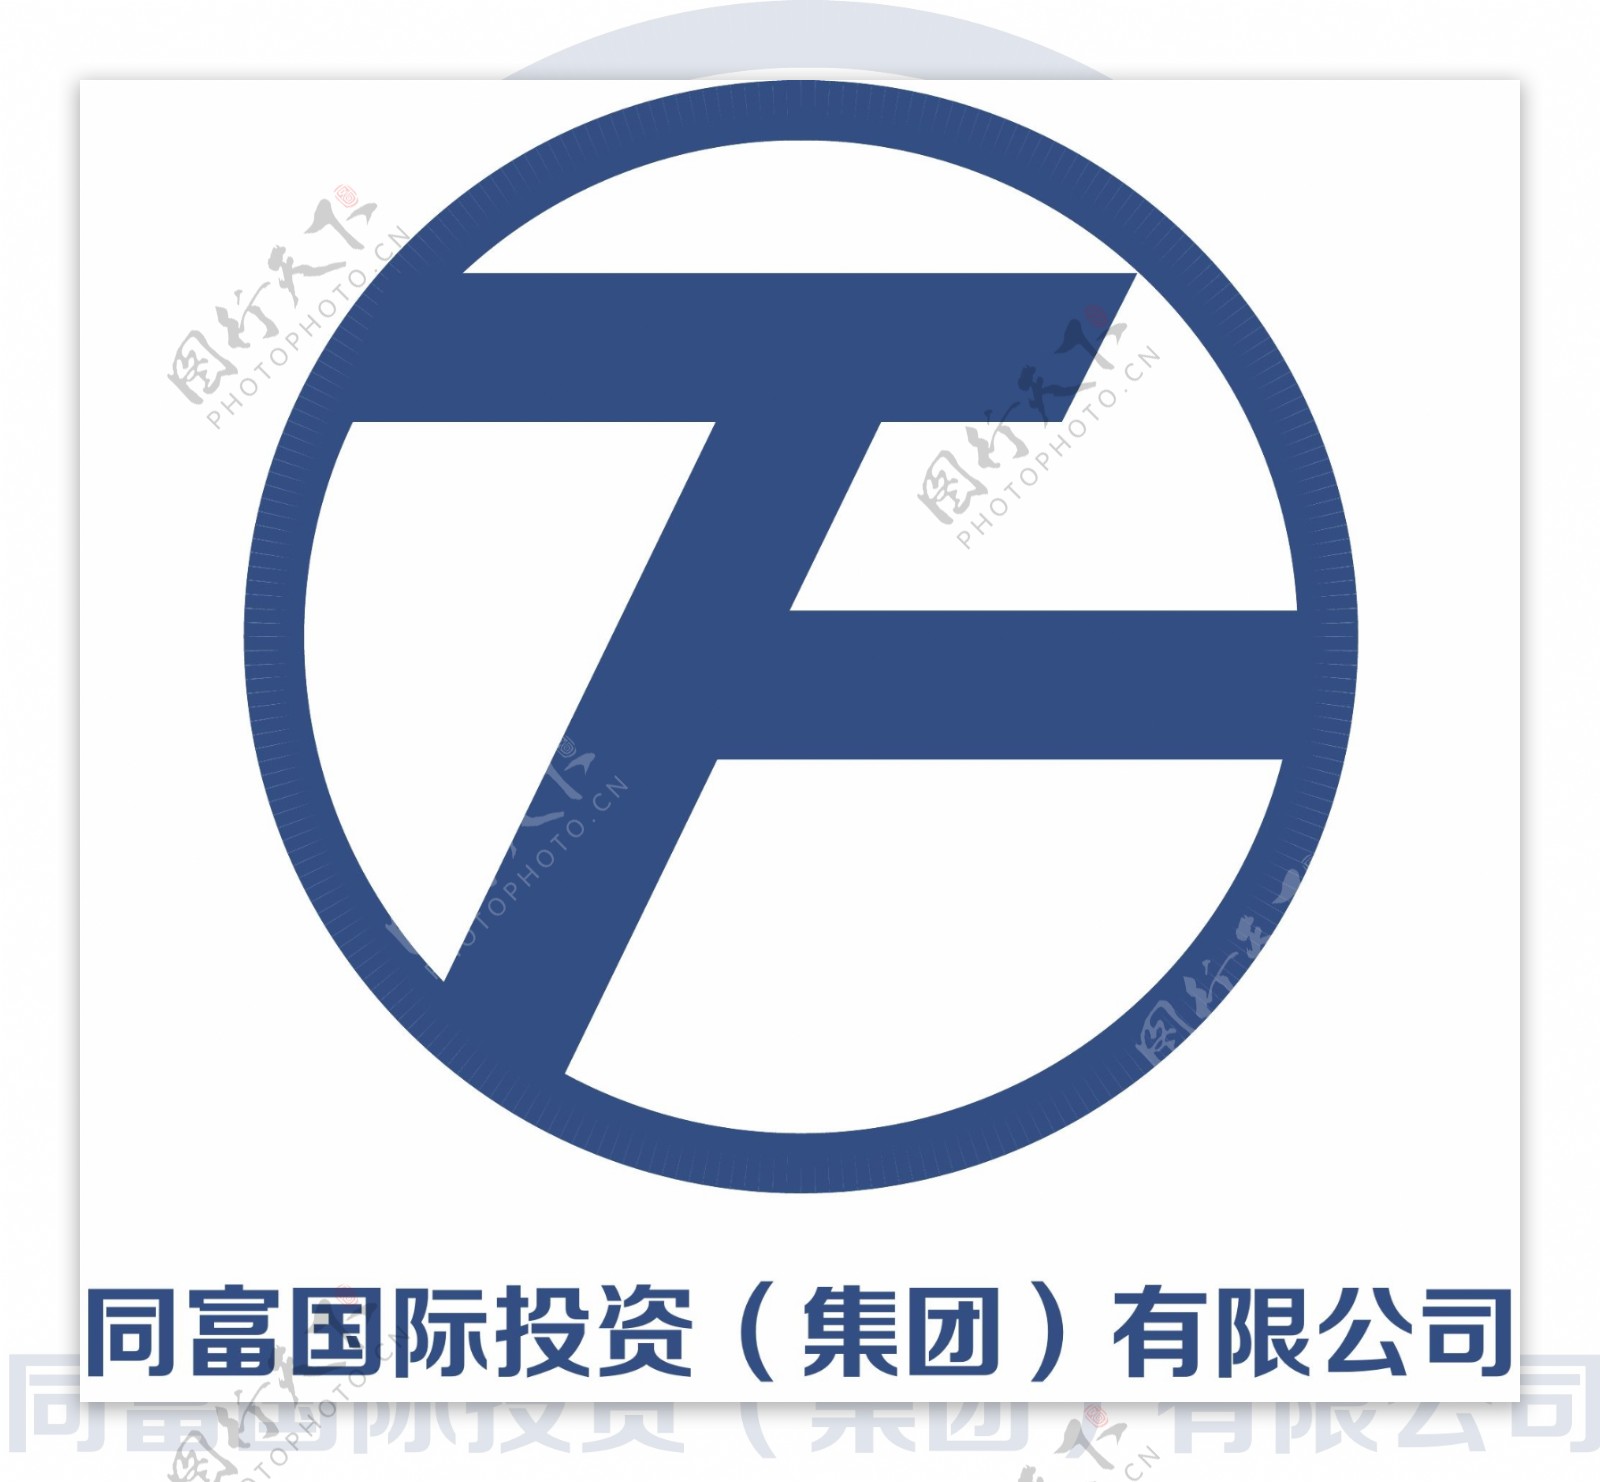 财富logo图片国际投资